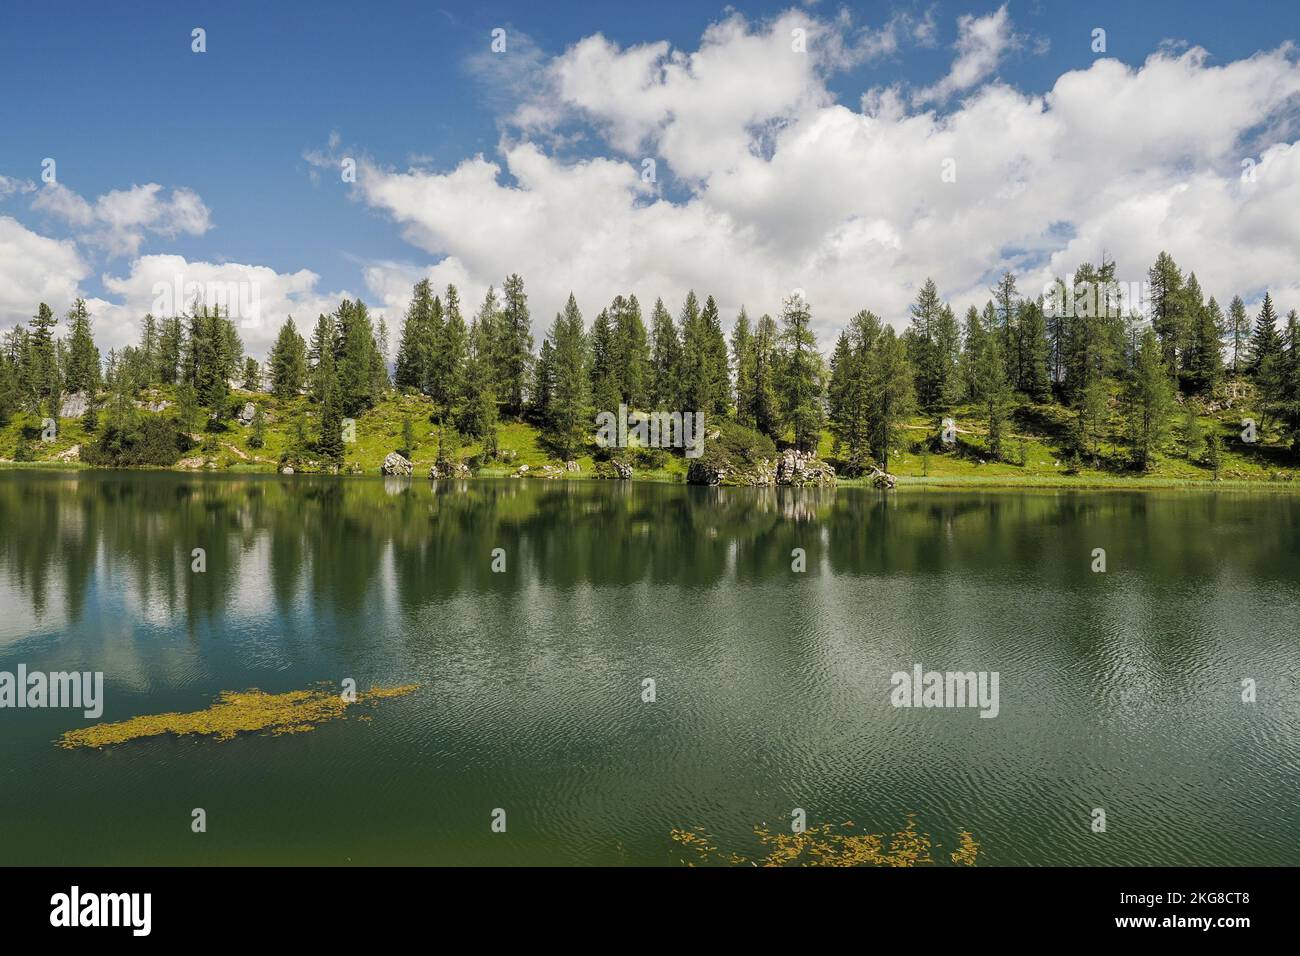 croda da lago Federa Lac dolomites vue panoramique sur le paysage Banque D'Images